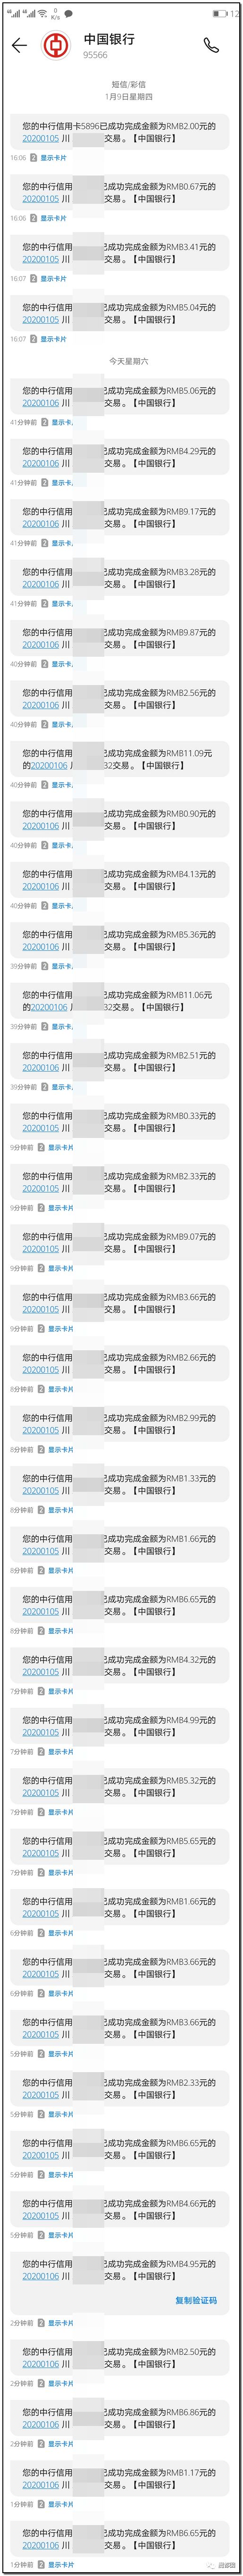 武汉etc与高速etc_北京地铁涨价838涨价吗_小车etc涨价了吗